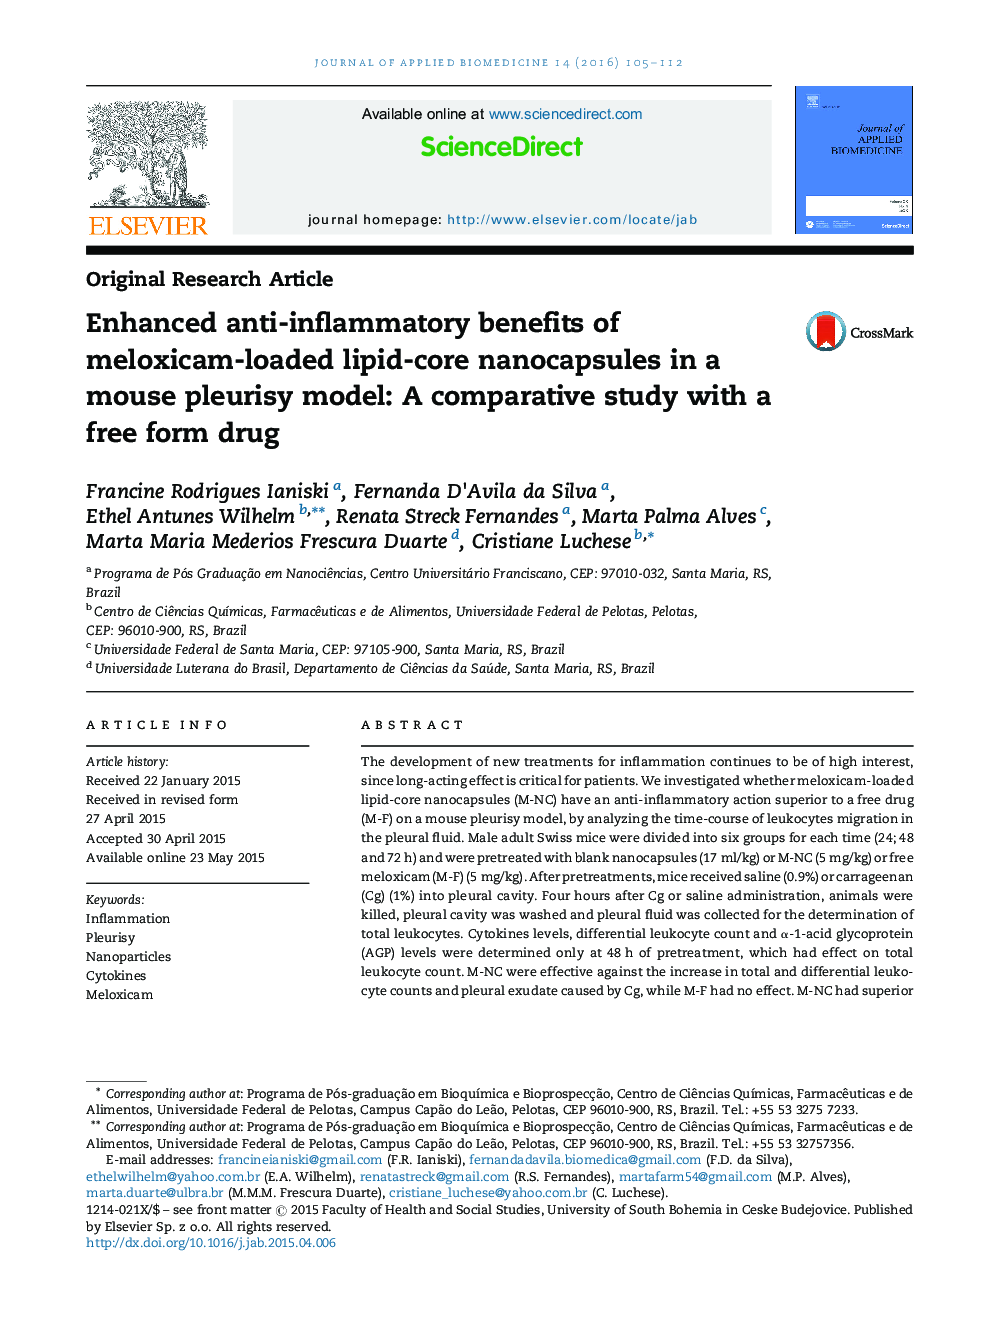 مزایای ضد التهابی پیشرفته نانو کپسولهای لیپید مونوئید ملوکسیام در مدل پلاویسی ماکسیک: یک مطالعه مقایسه ای با یک داروی آزاد 